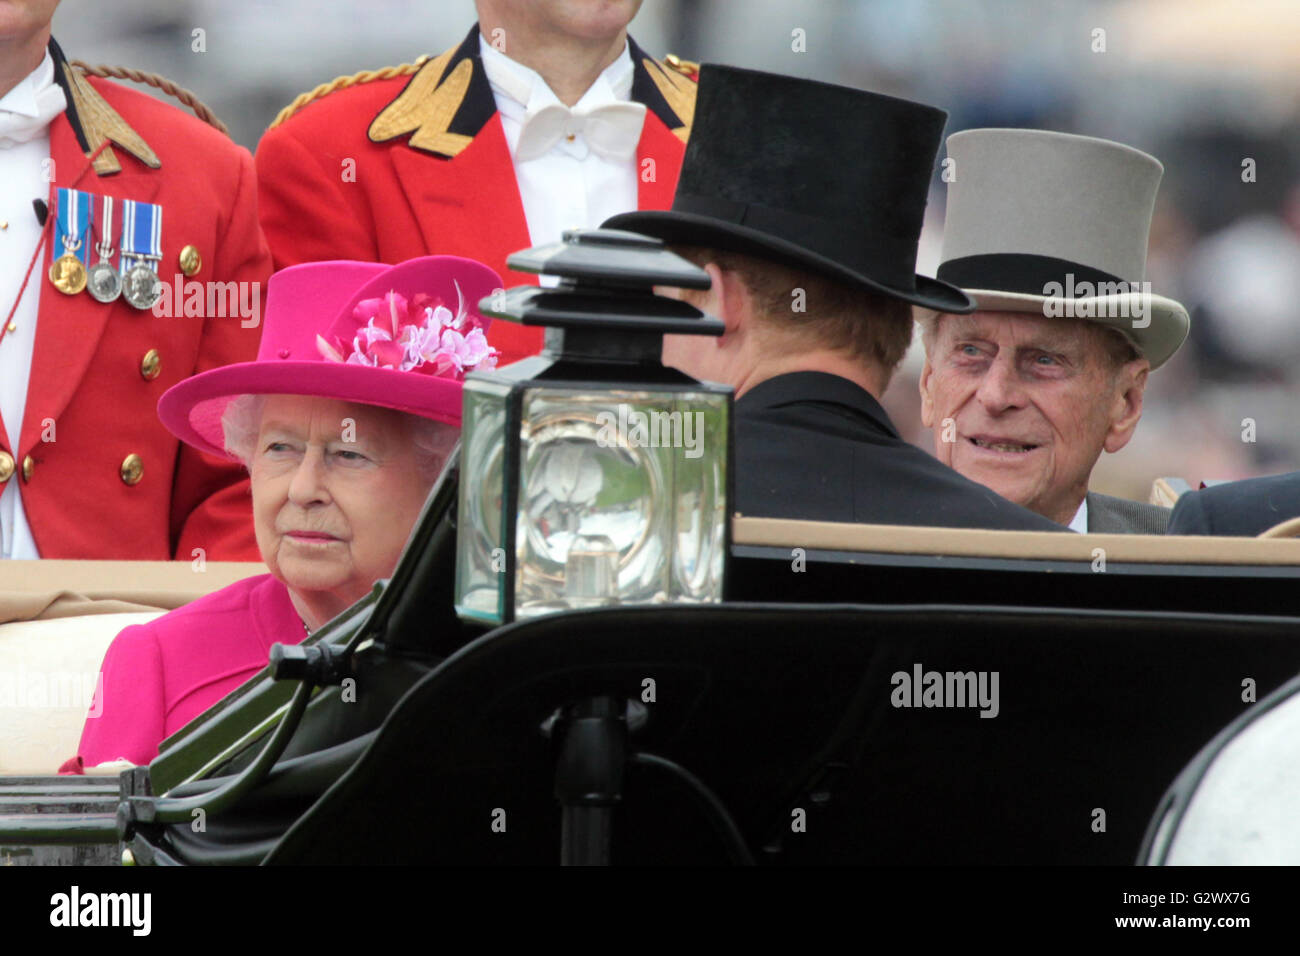 16.06.2015, Ascot, Berkshire, Grossbritannien - Königin Elizabeth II, Königin von Großbritannien und Nordirland und Ehemann Prinz Philip in einer Kutsche sitzen. 00S150616D711CAROEX. JPG - nicht für den Verkauf in G E R M A N Y, A U S T R I A S W I T Z E R L A N D [MODEL-RELEASE: Nein, PROPERTY-RELEASE: Nein, (C) Caro Fotoagentur / Sorge, http://www.caro-images.com, info@carofoto.pl - jegliche Nutzung dieses Bildes unterliegt GEMA!] Stockfoto